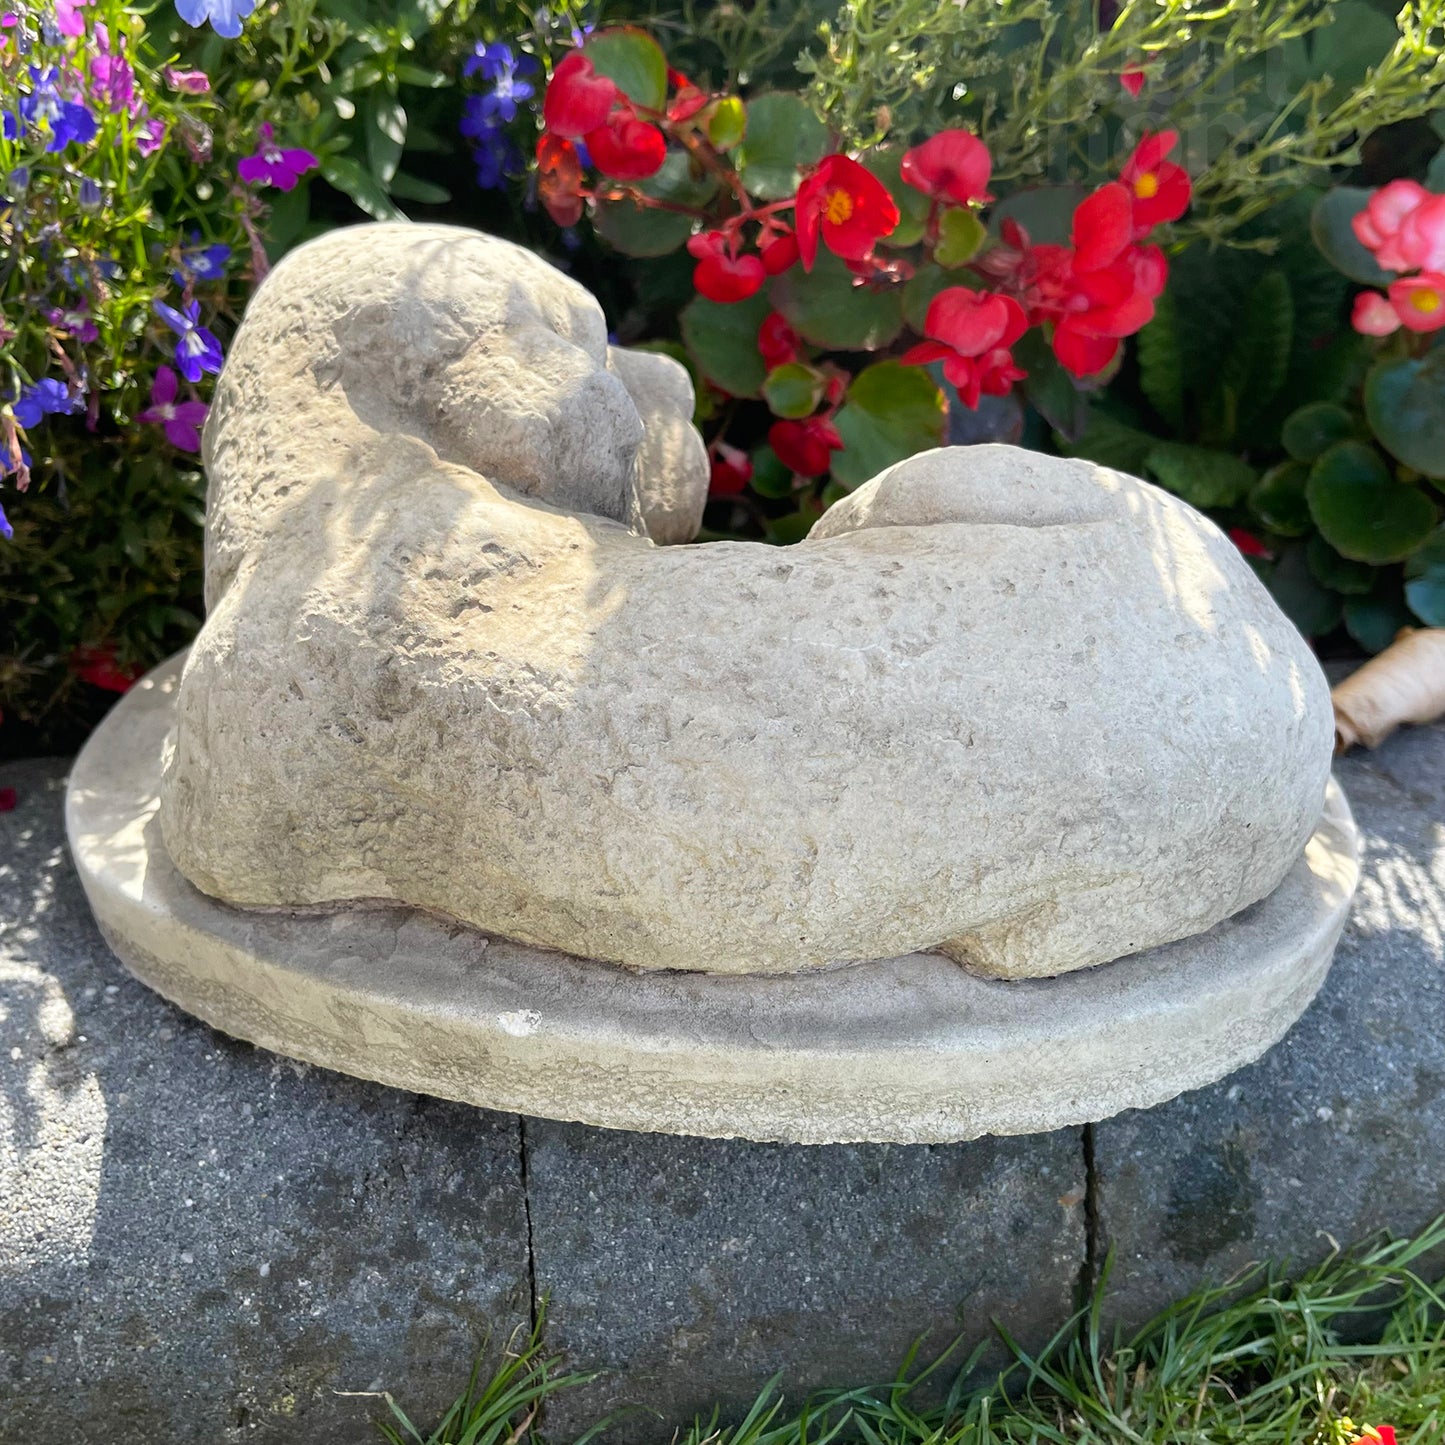 Gedenkfigur für geliebten Hund aus Stein